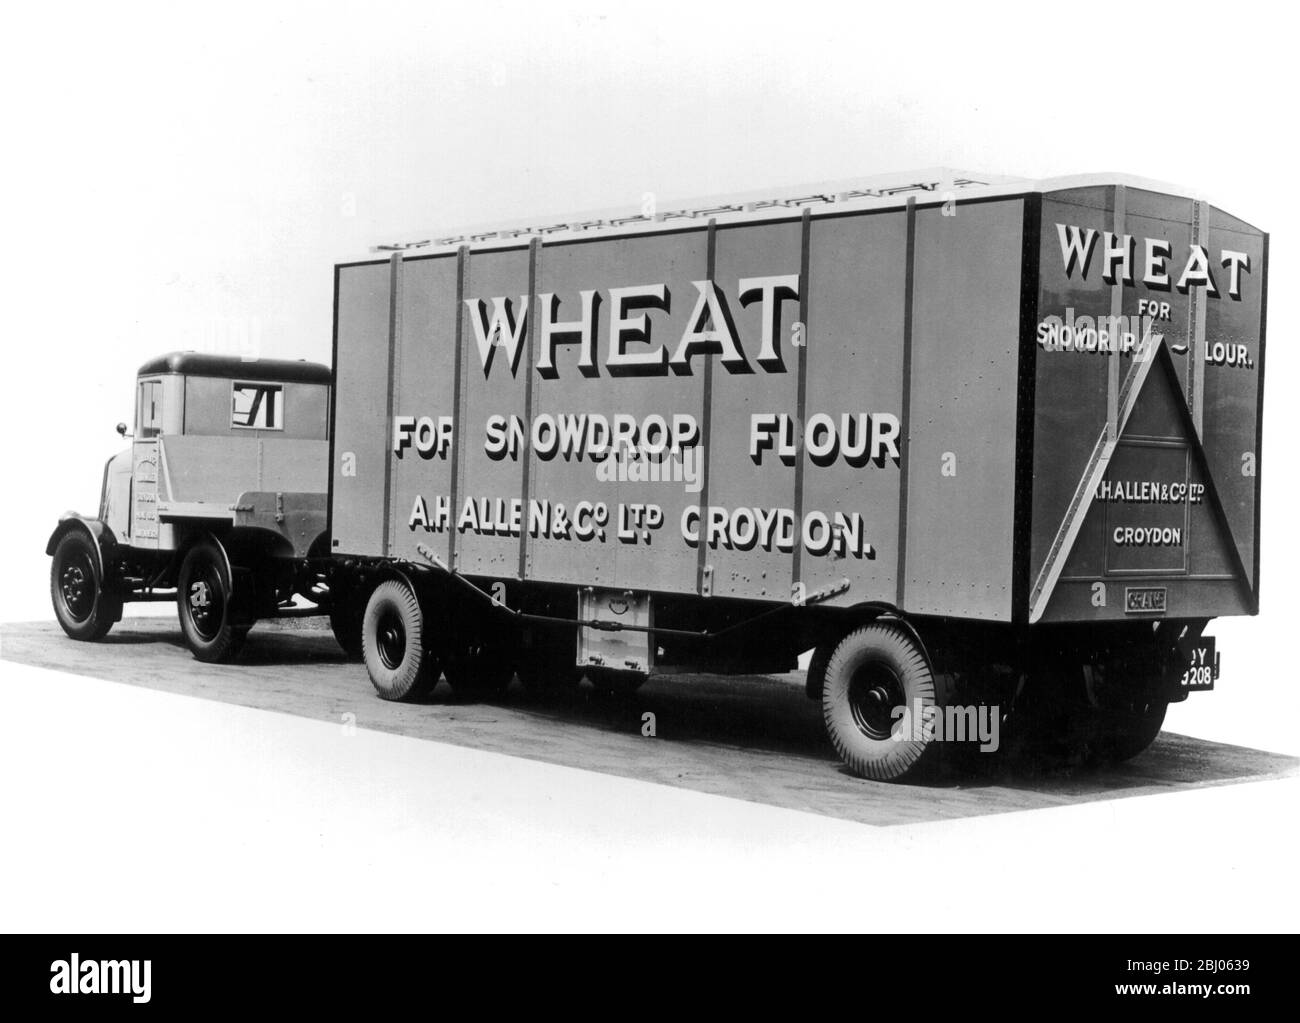 Tolva de grano de aleación de aluminio en 15 años esta máquina ha transportado 15,000 toneladas de trigo. - 26 de enero de 1950 Foto de stock